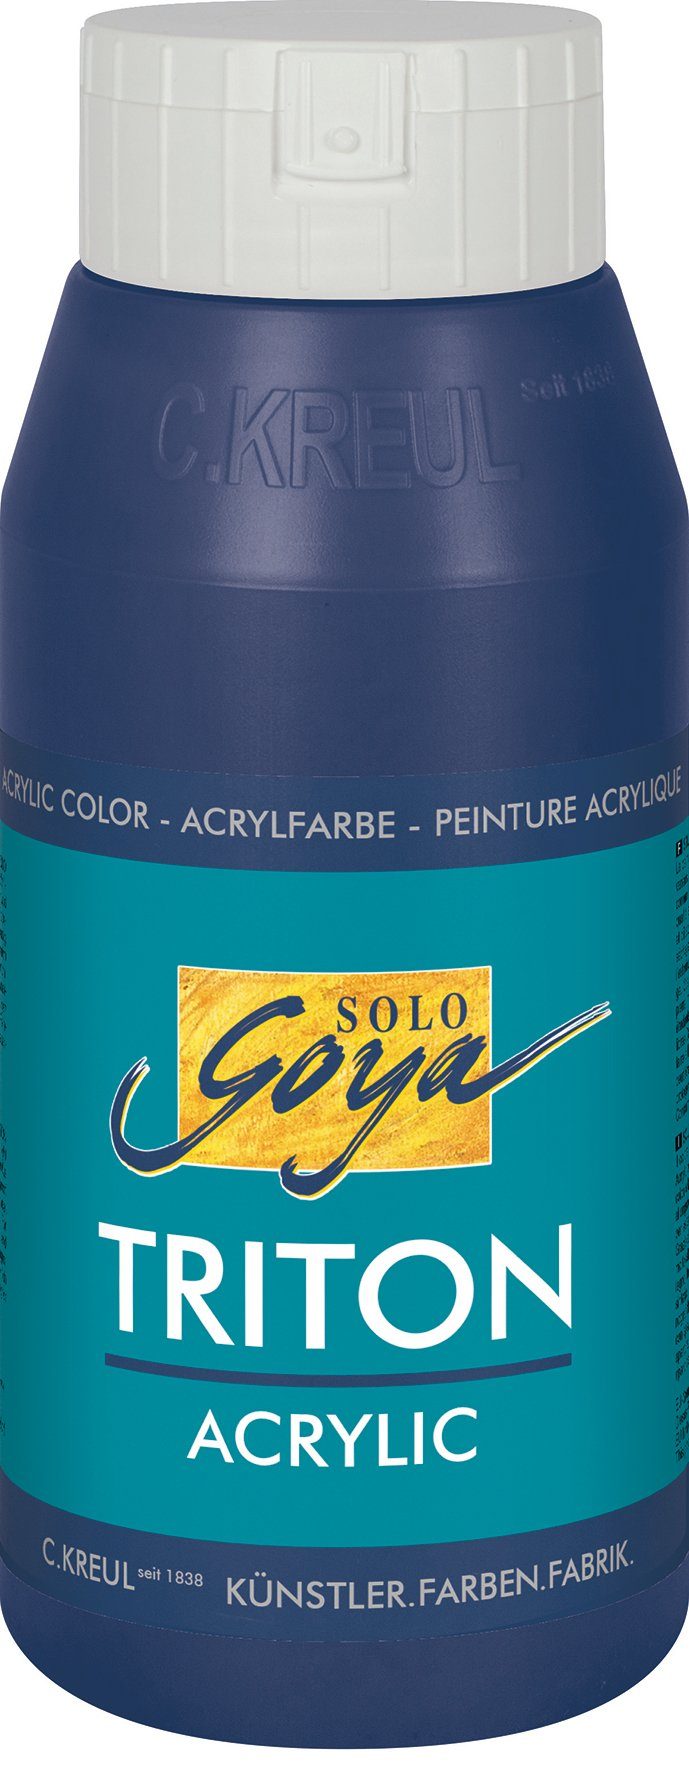 Kreul Acrylfarbe Solo Goya Triton Acrylic, ml Dunkelblau 750